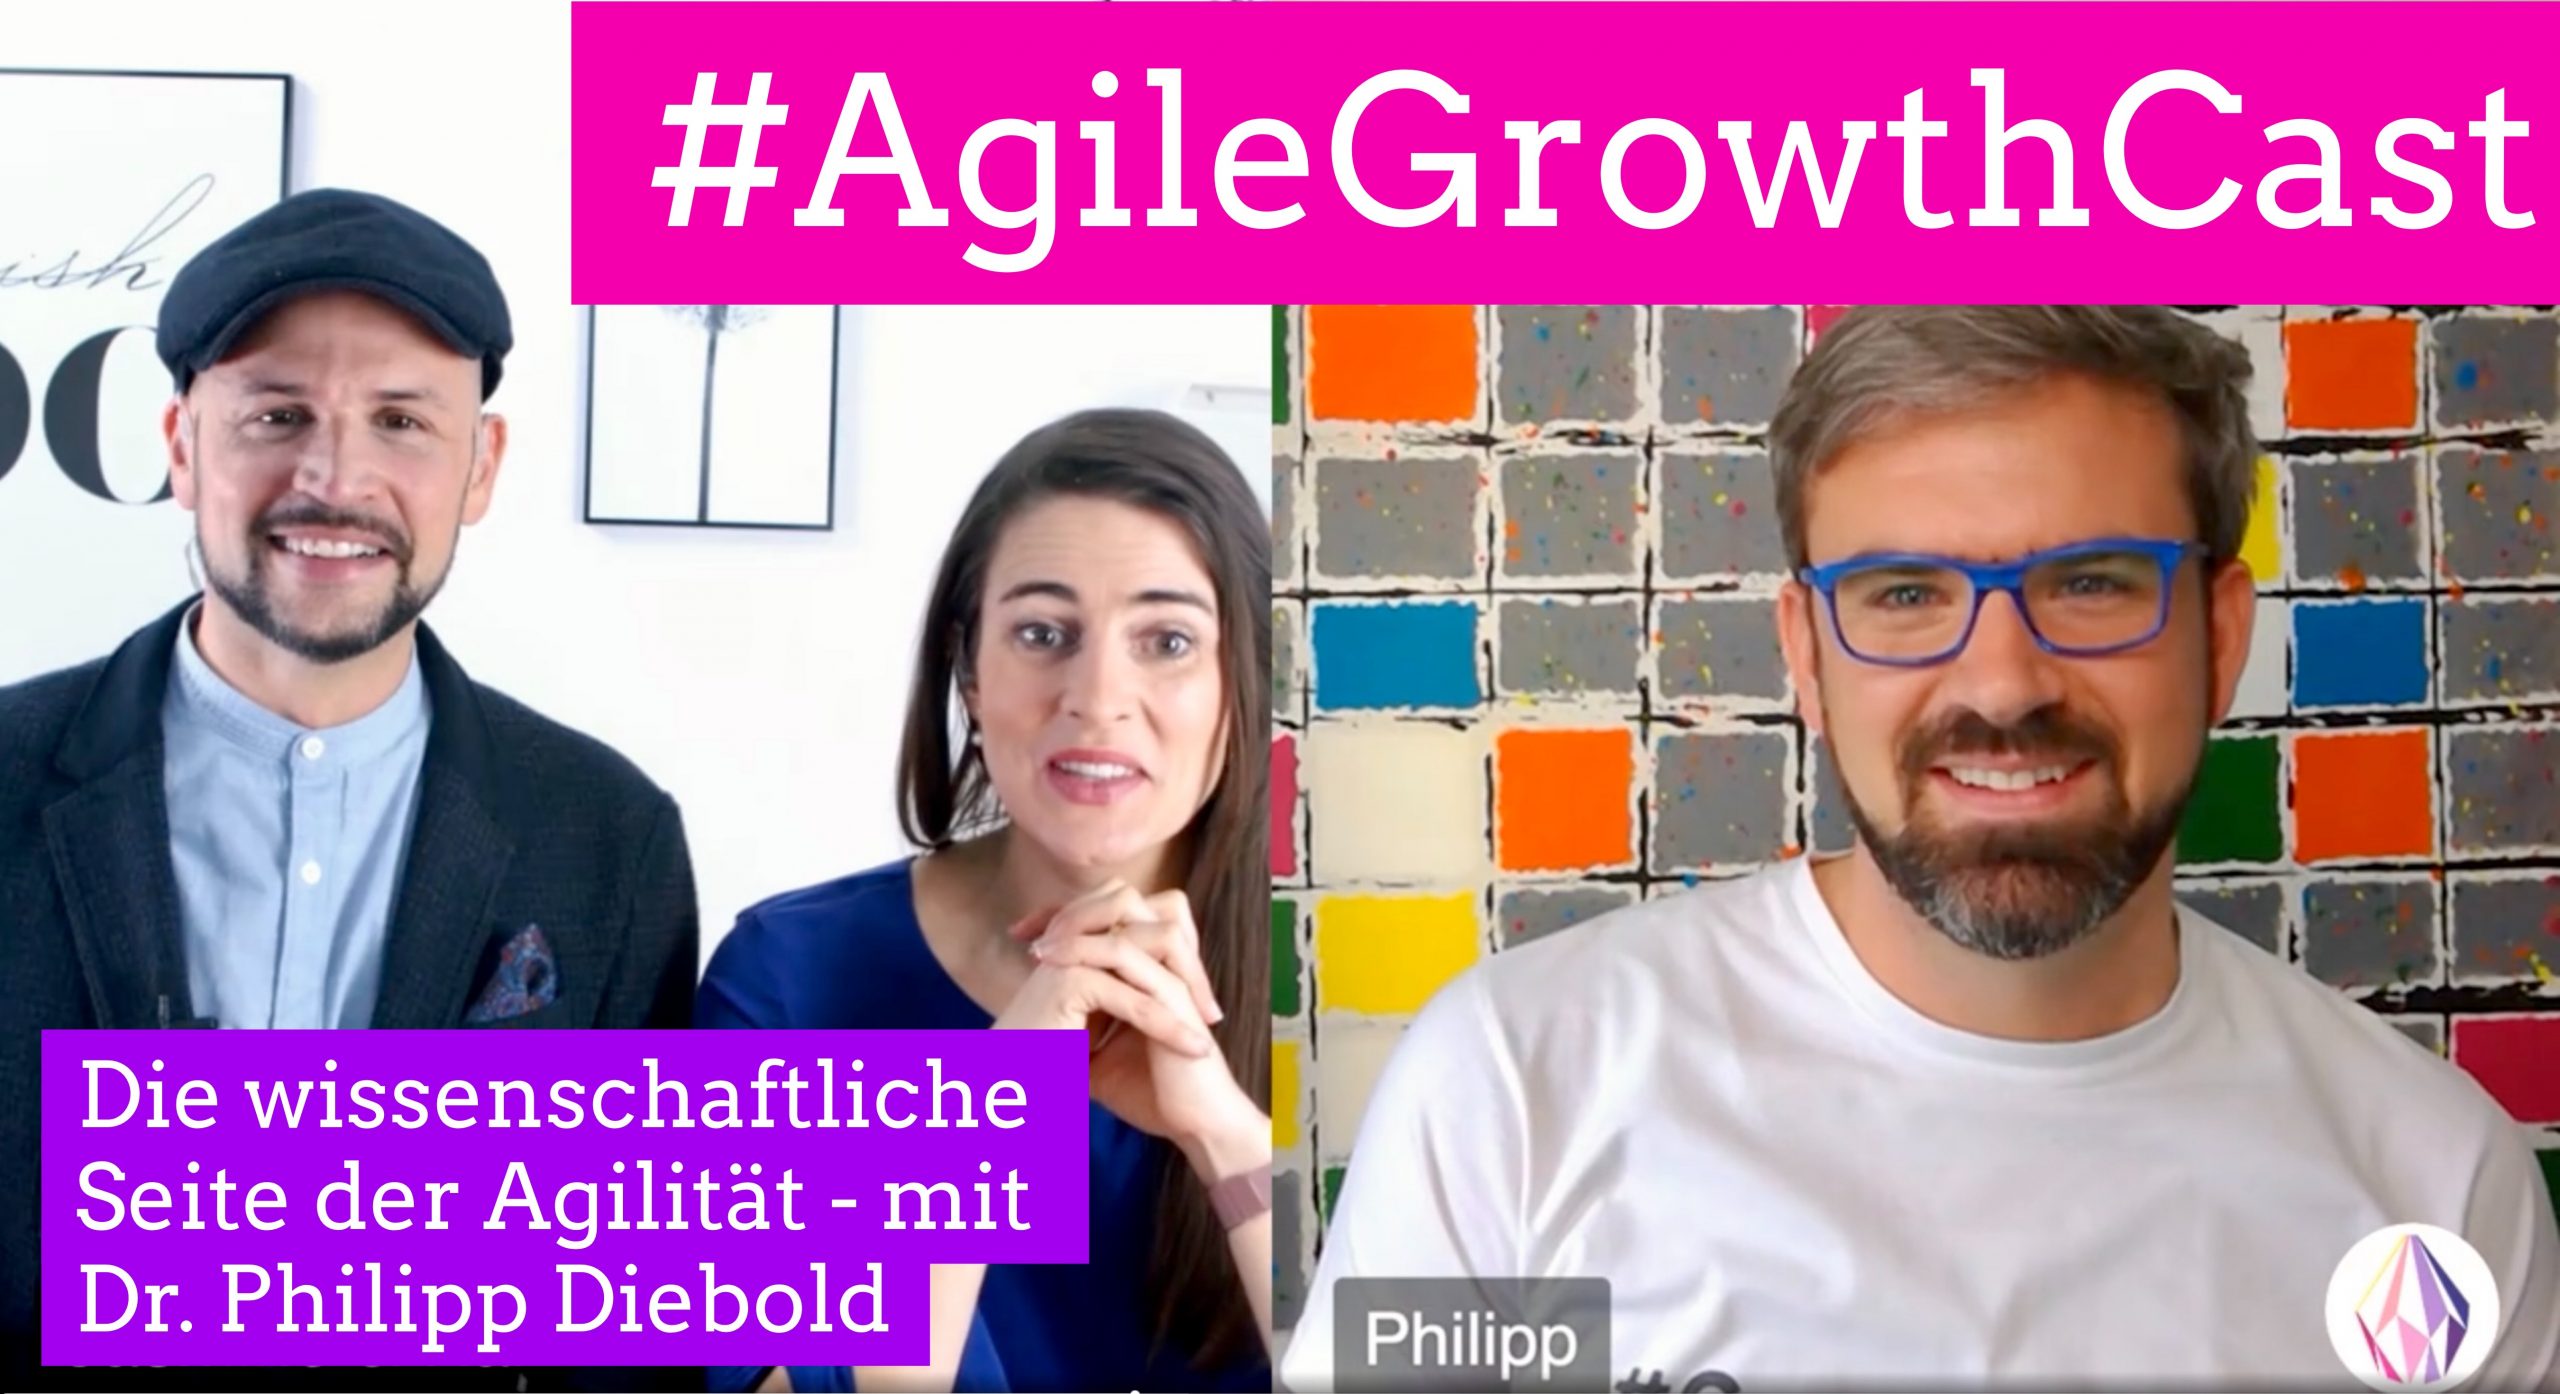 Der wissenschaftliche Blick auf Agilität - Dr. Philipp Diebold im #AgileGrowthCast